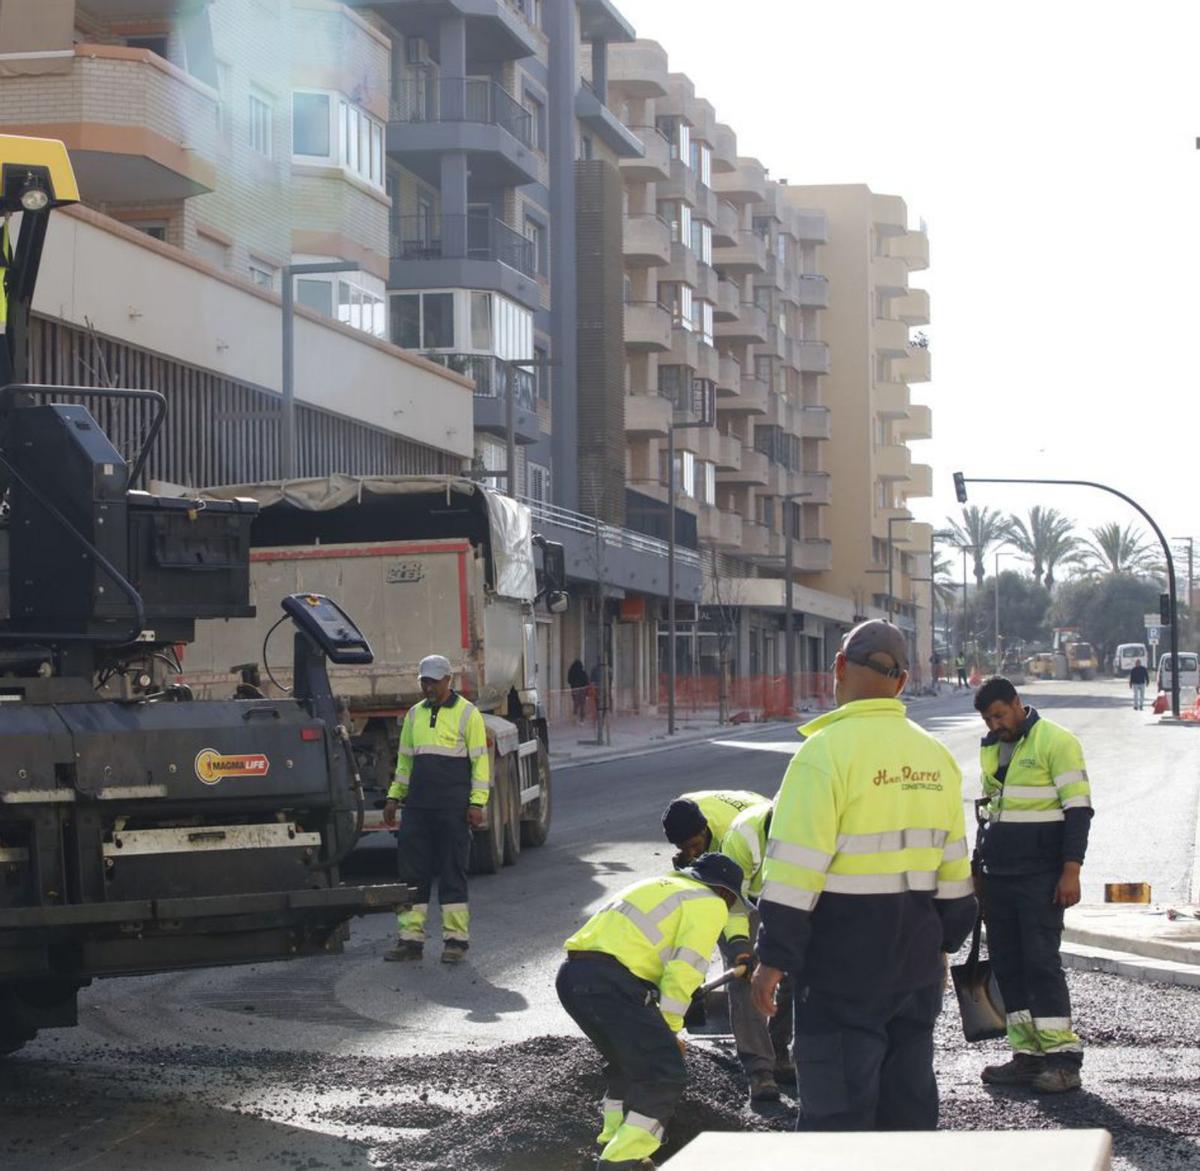 Arreglos para la reapertura de la calle de Balears, que está prevista para hoy. | J.A.RIERA